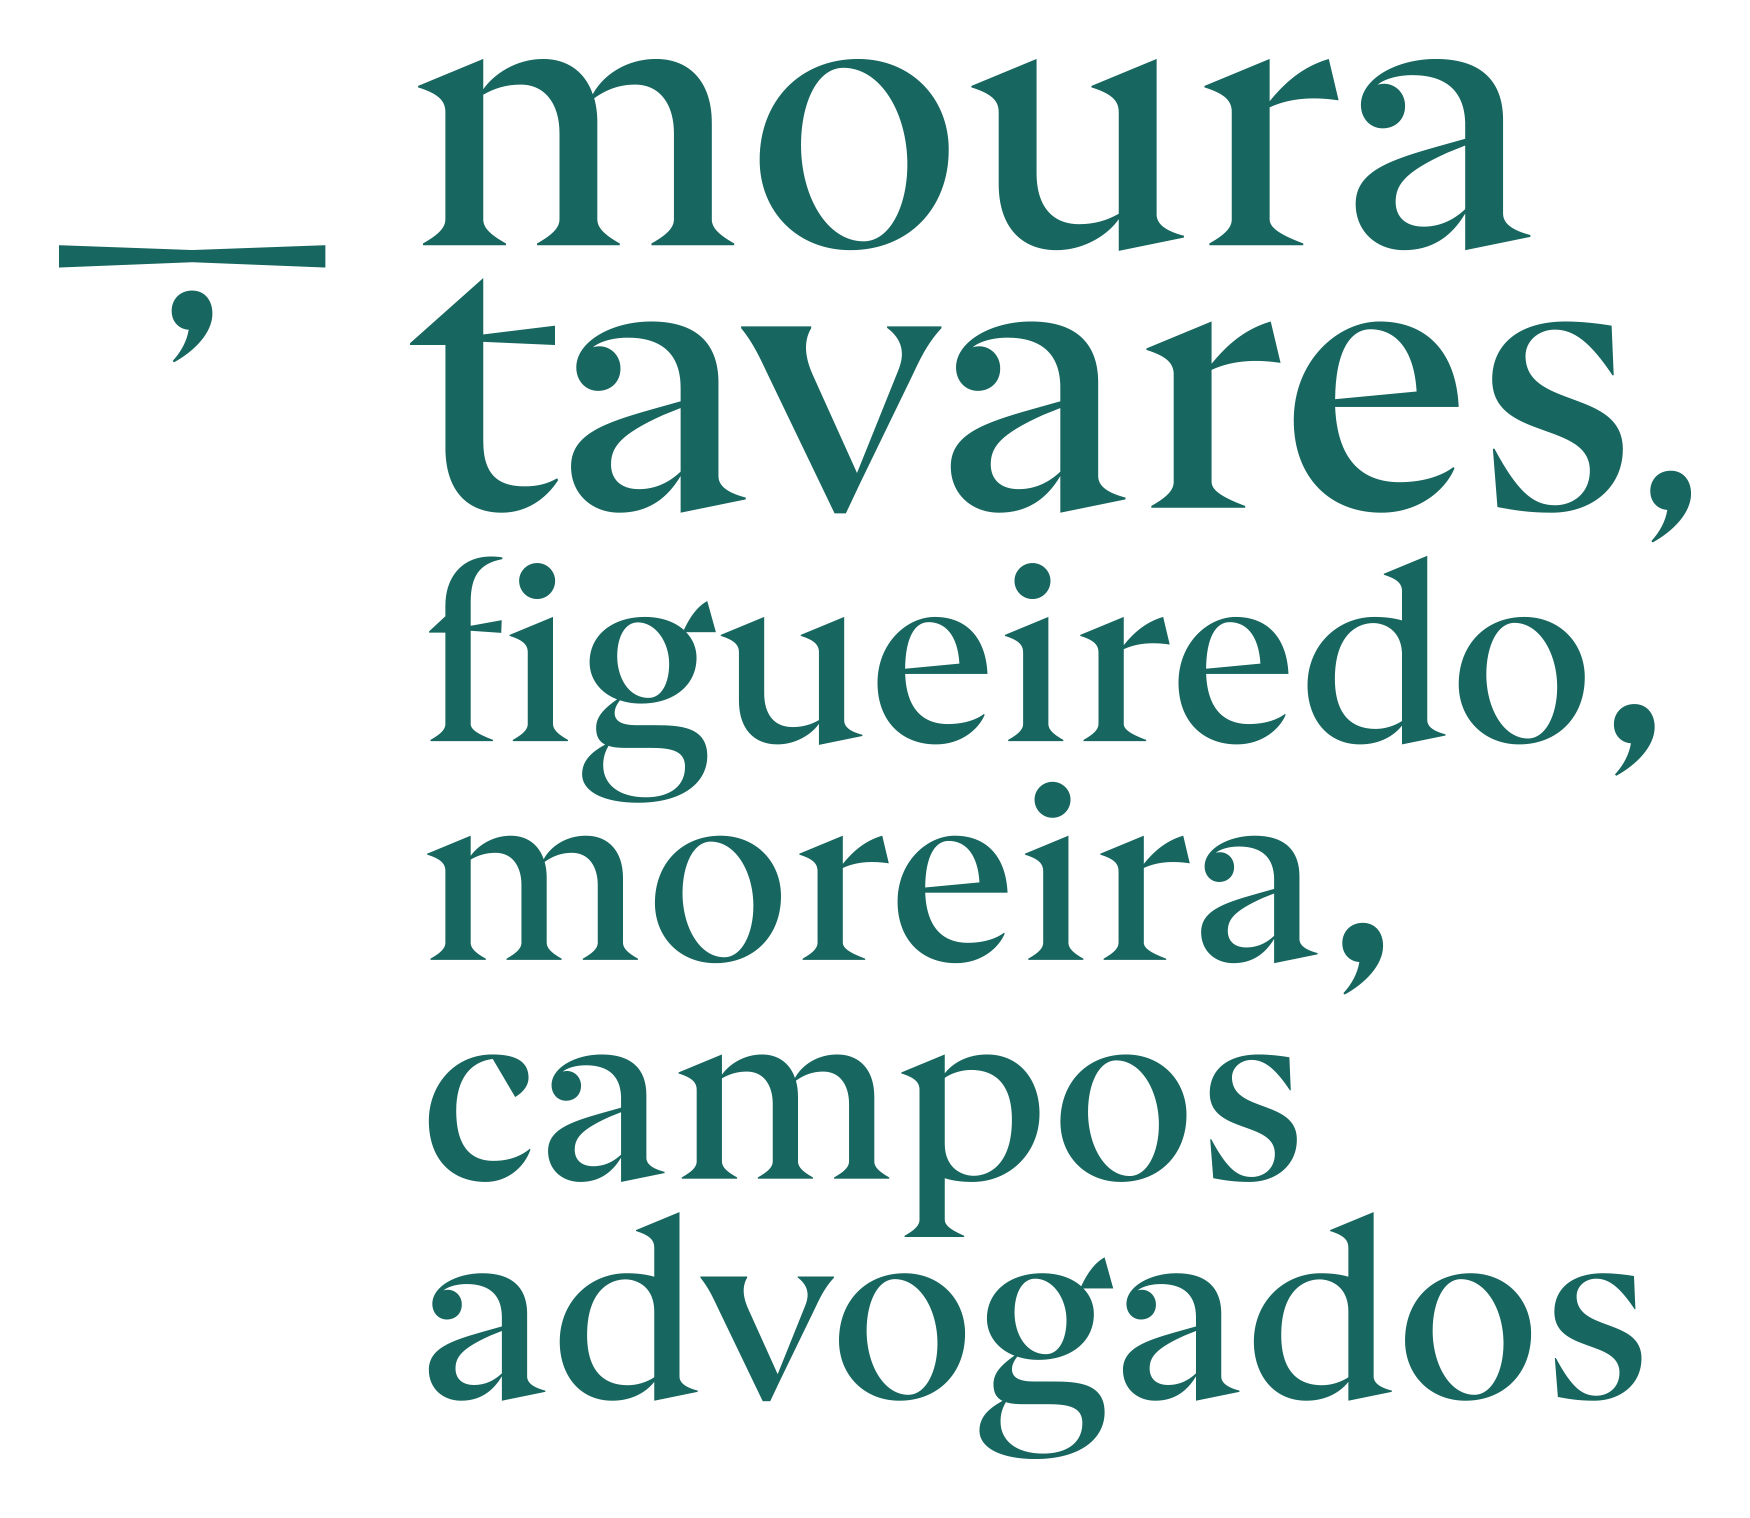 Moura Tavares, Figueiredo, Campos